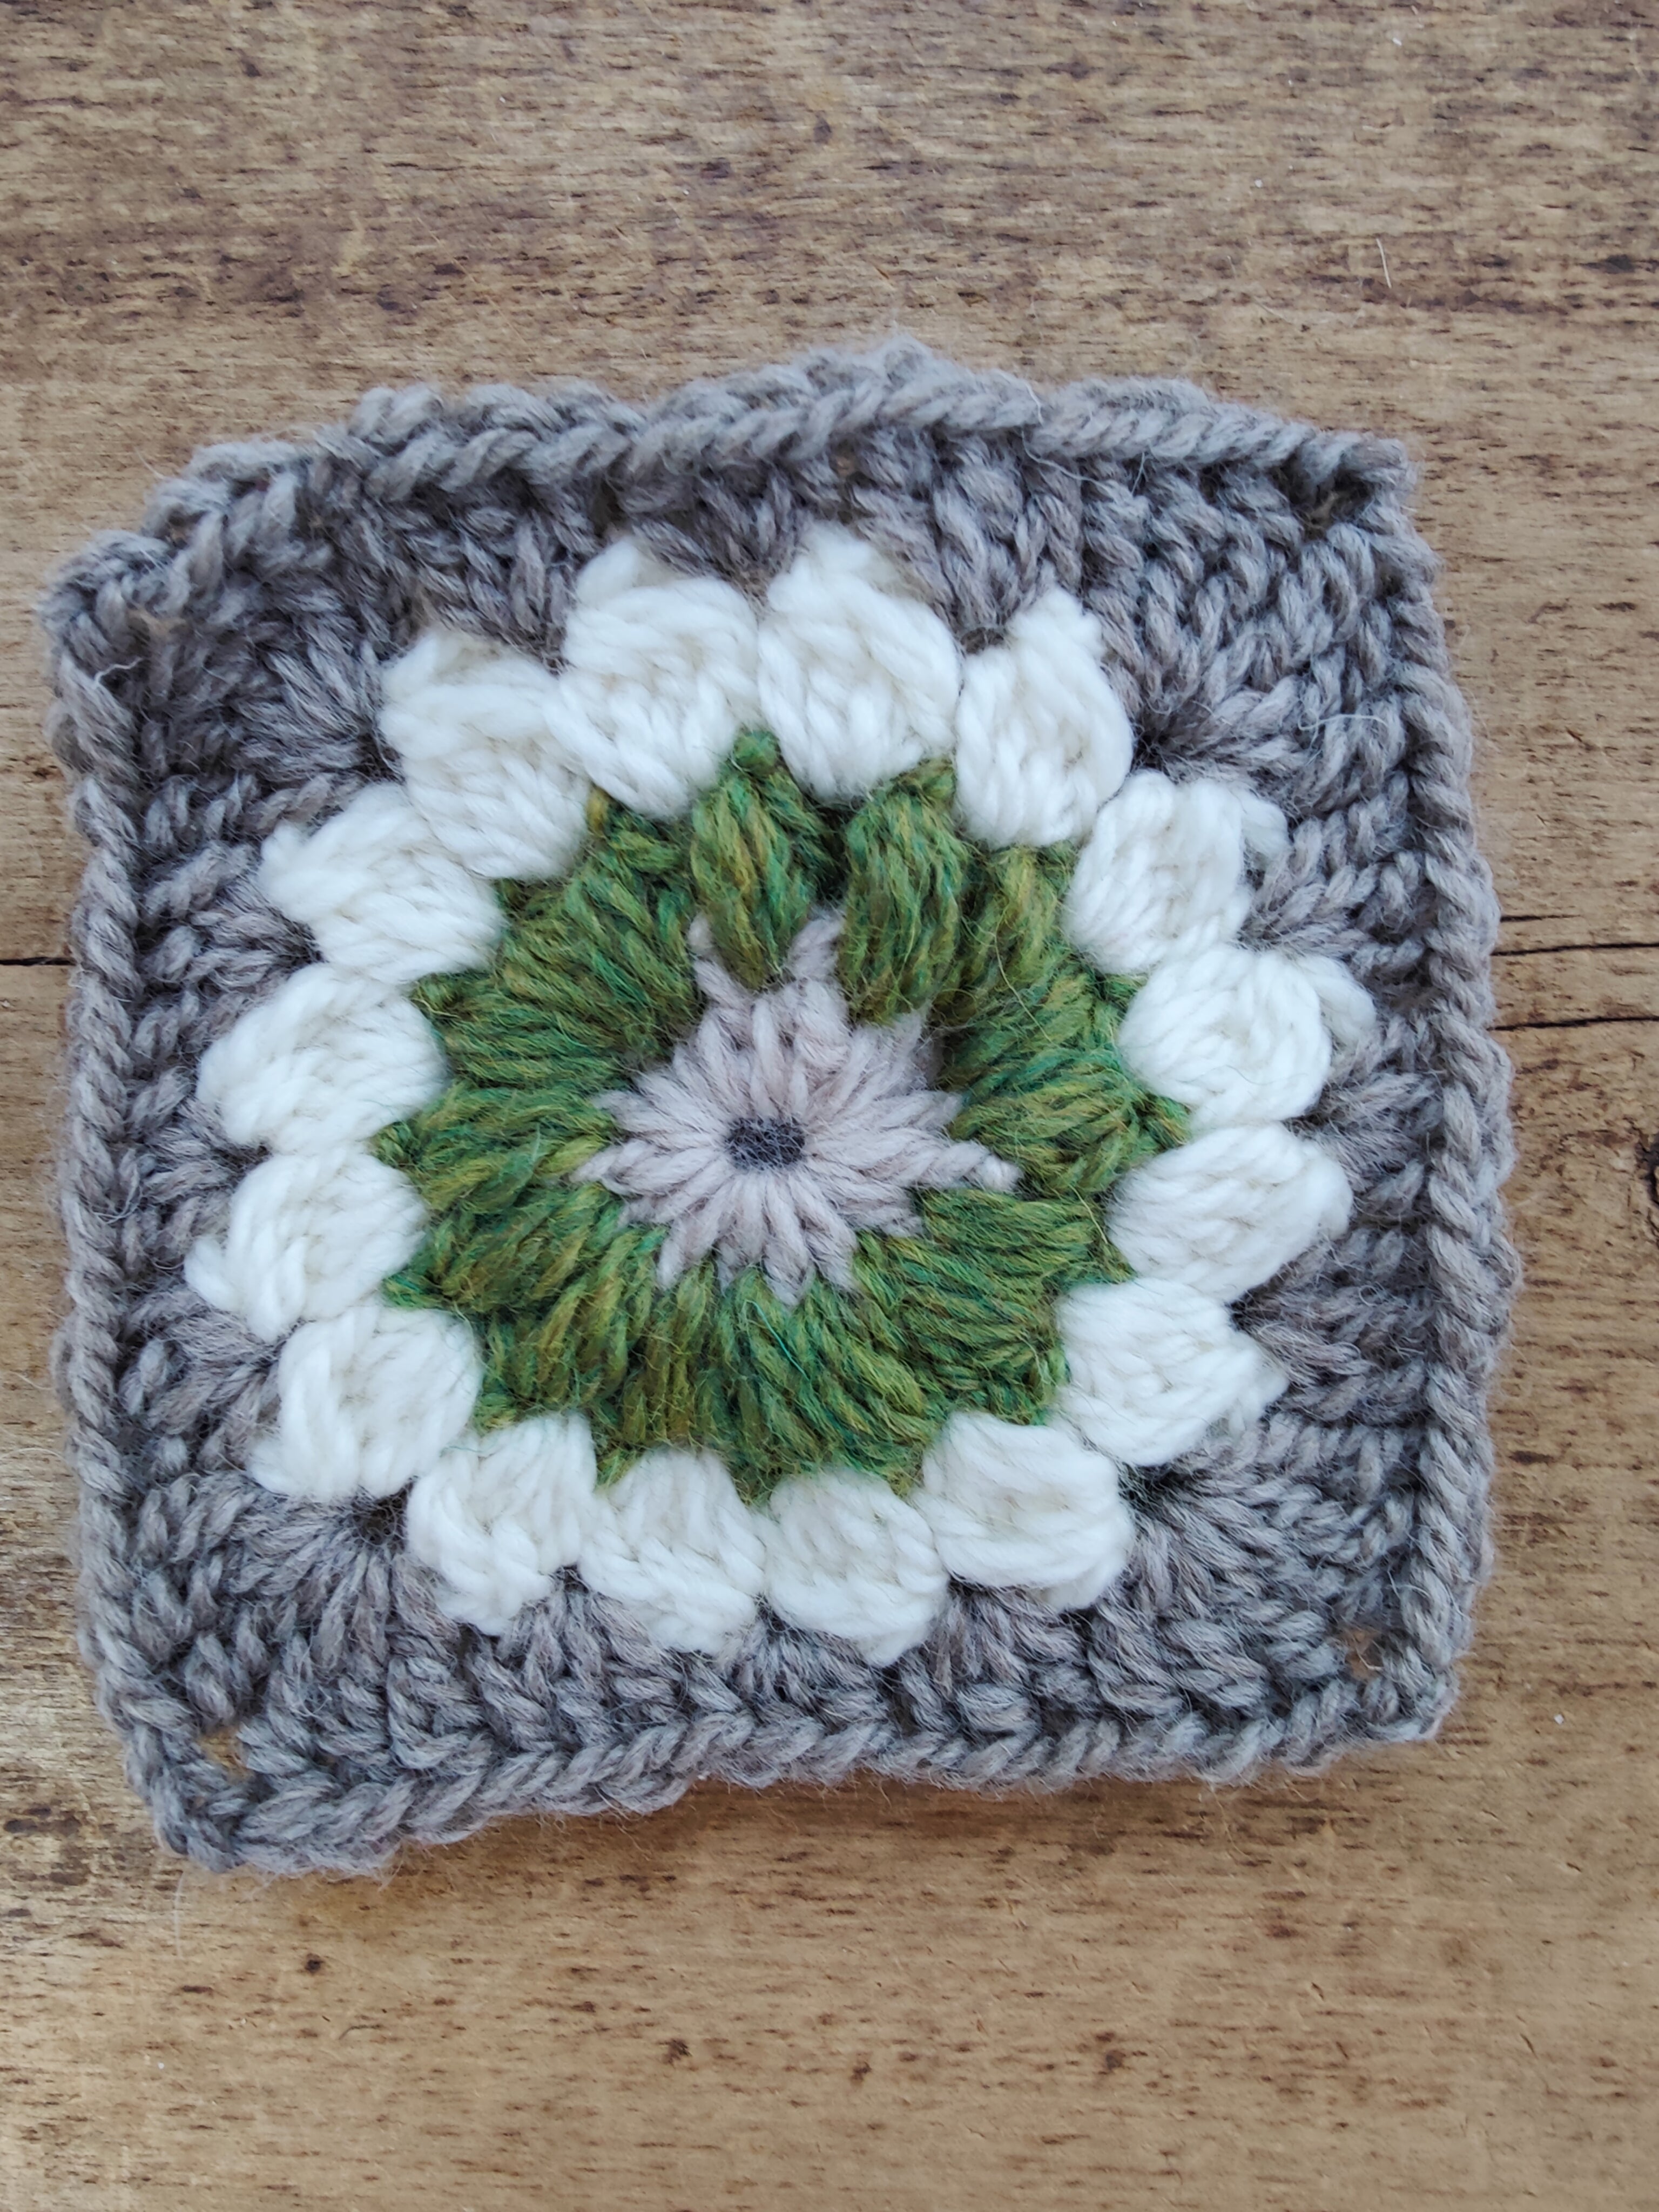 Beginning Crochet - Granny Square